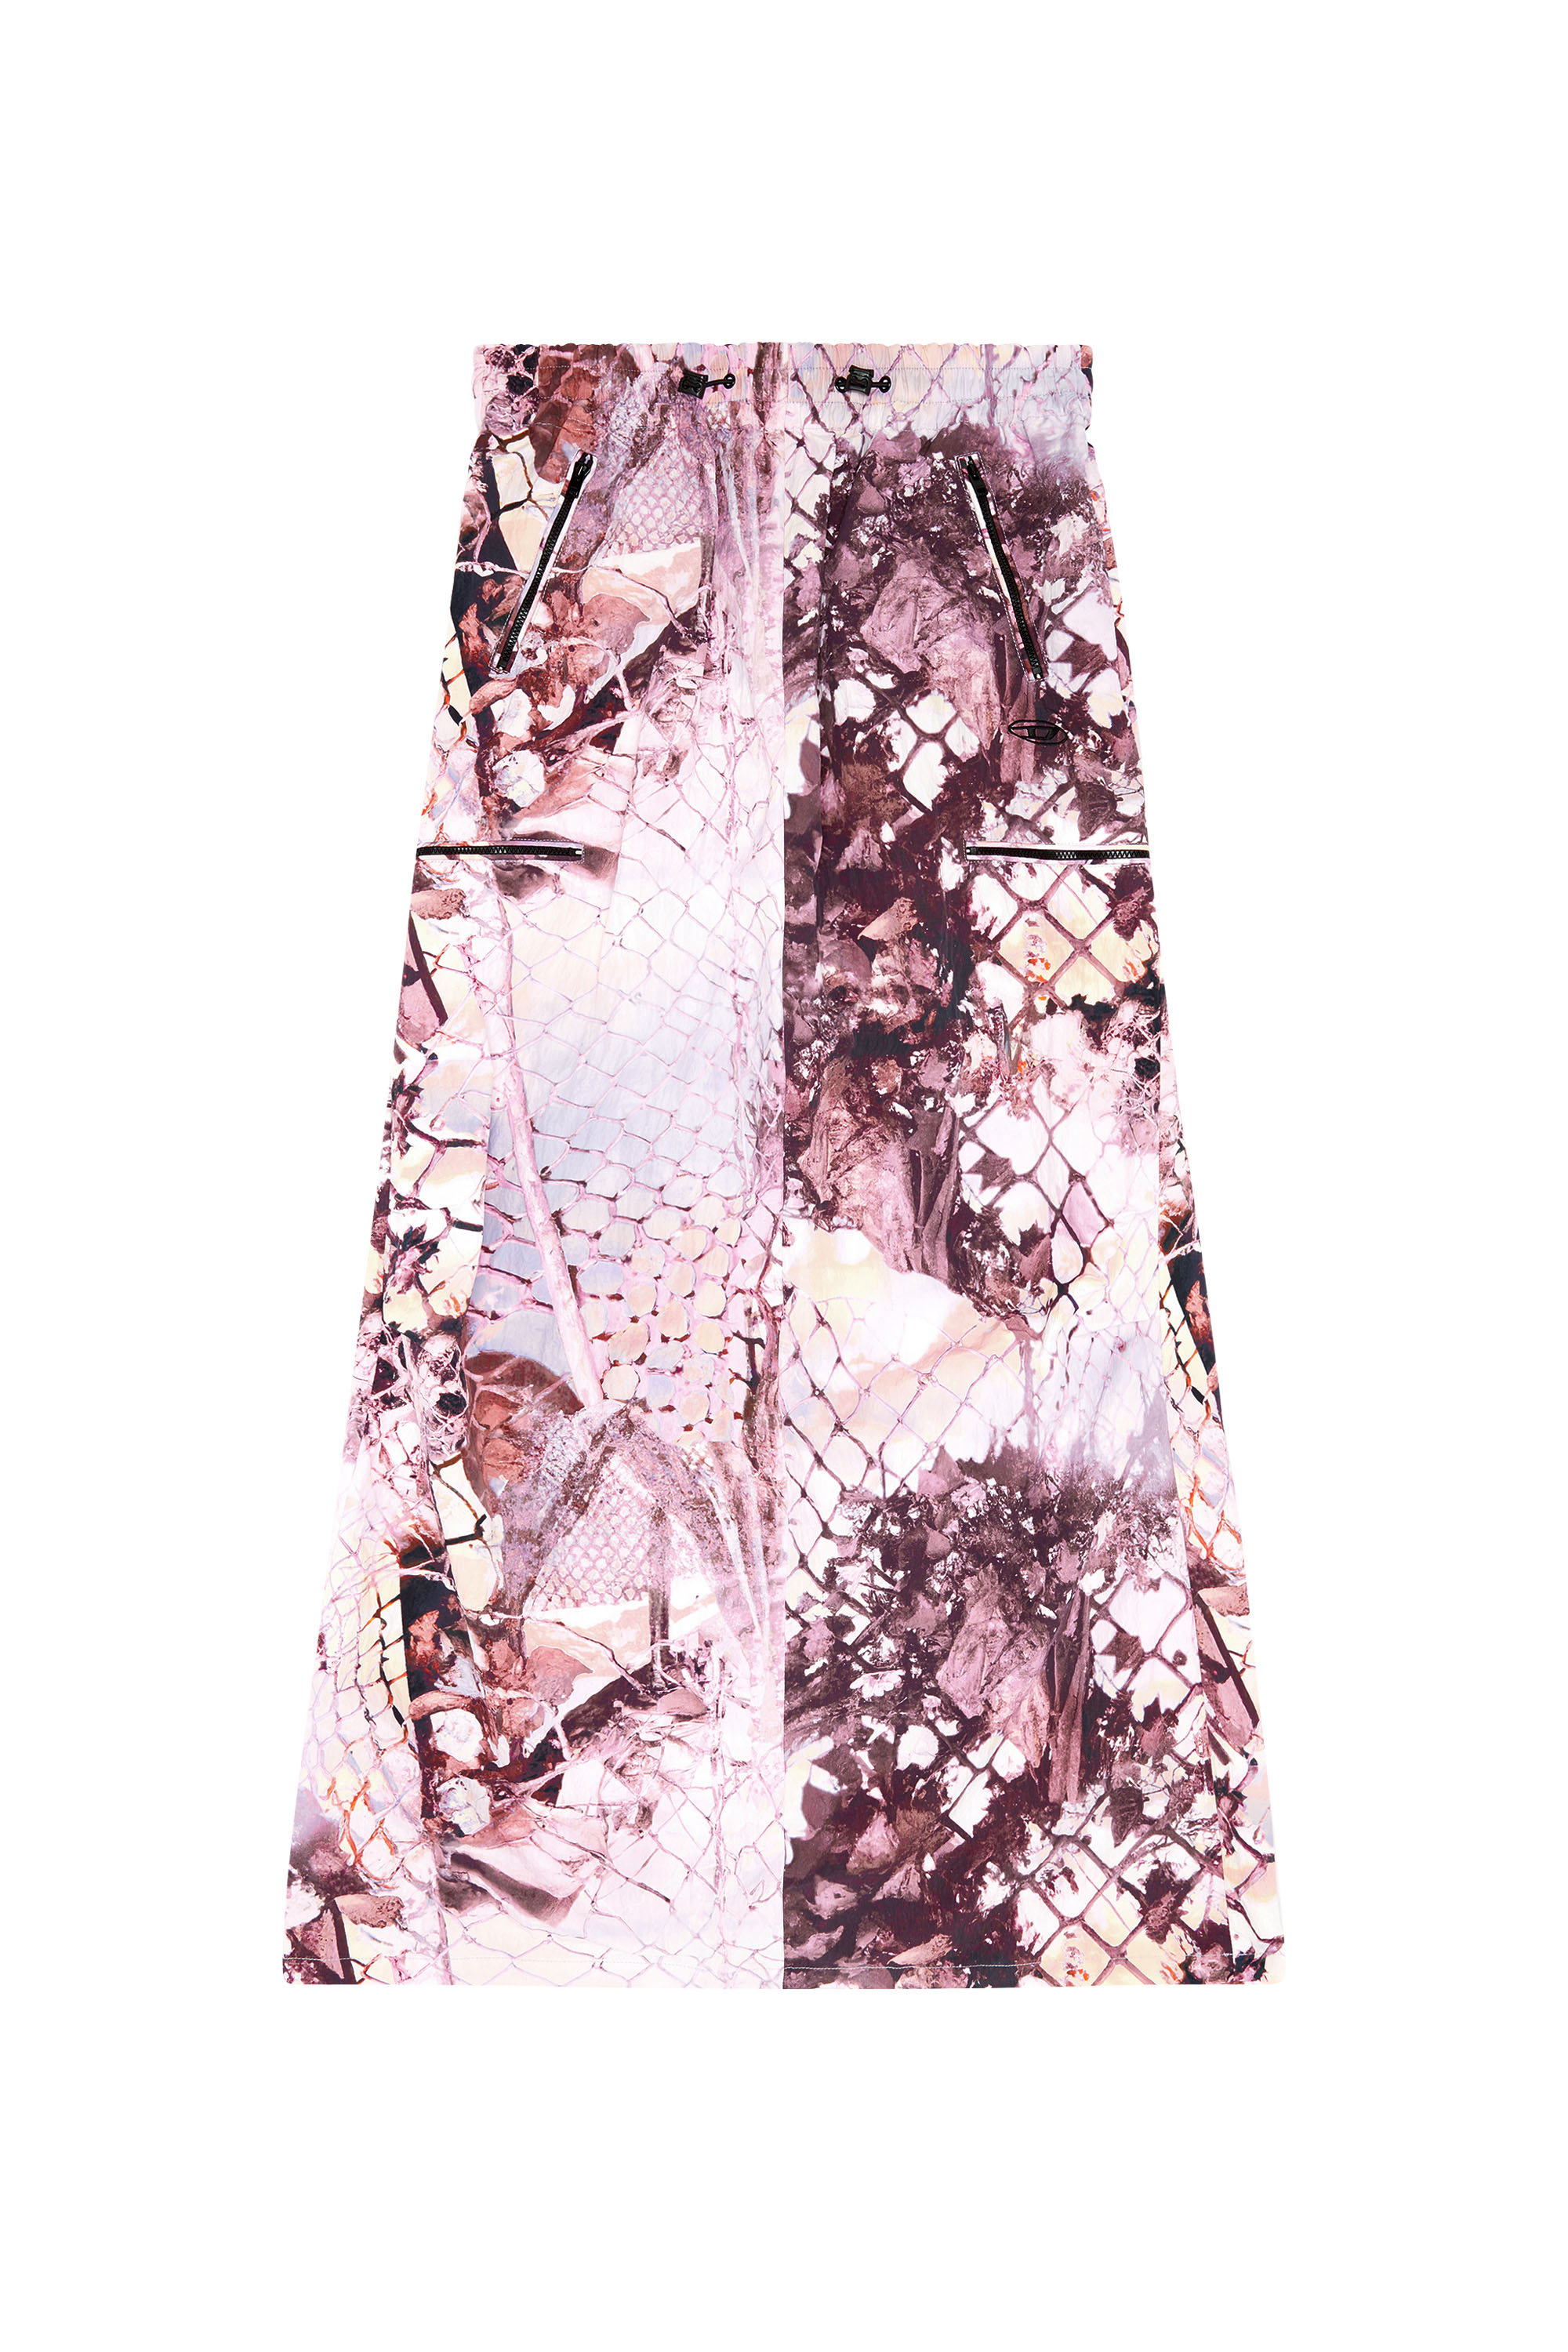 Diesel - O-DIAMY-N1, Woman Long skirt in printed crinkled nylon in Violet - Image 3